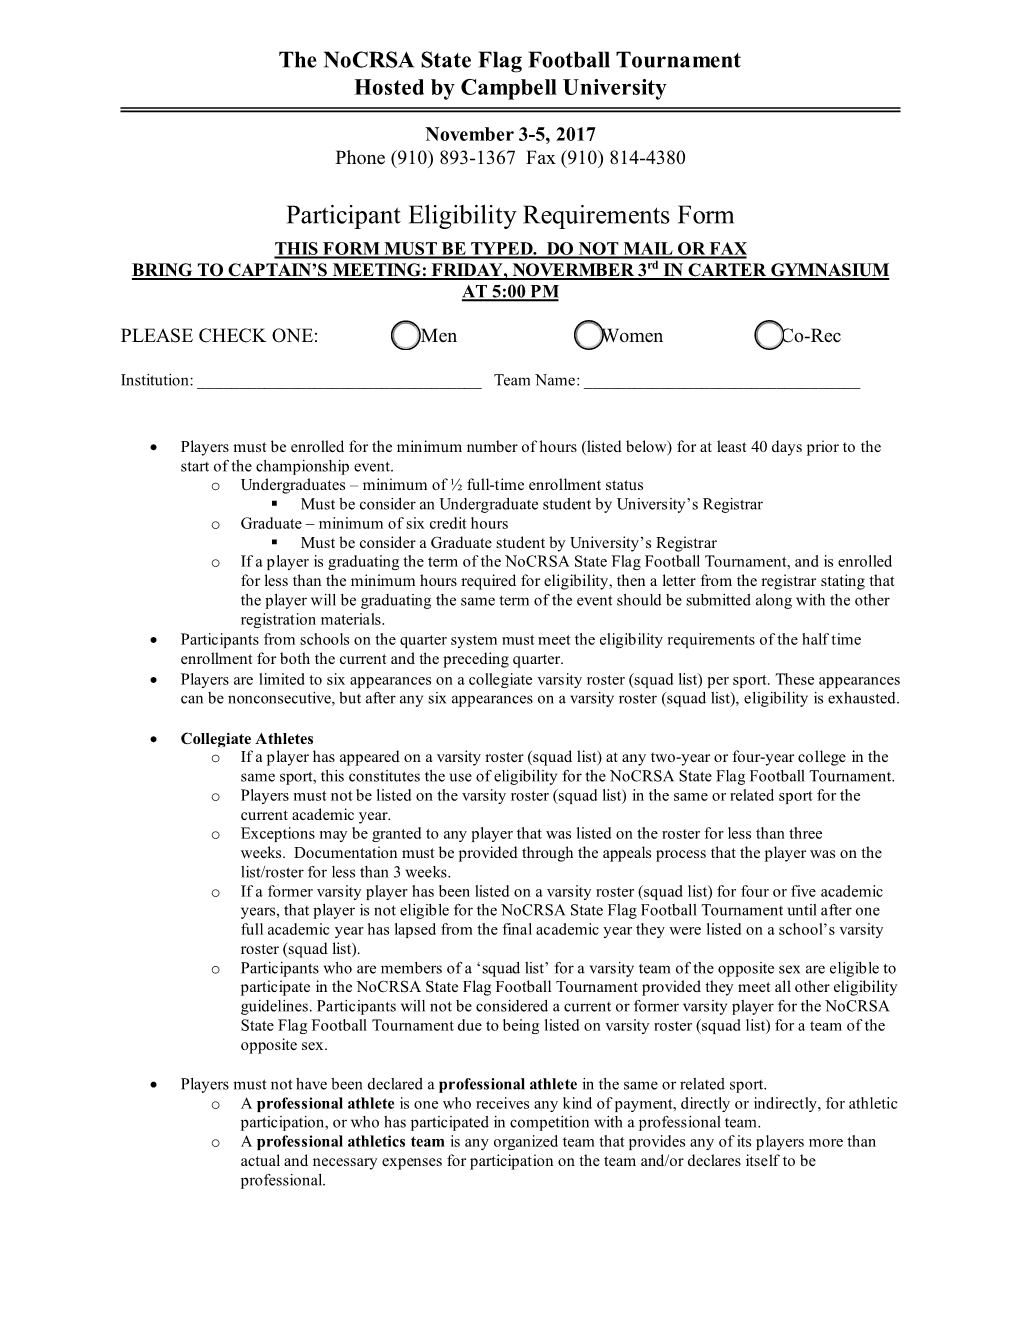 Participant Eligibility Requirements Form